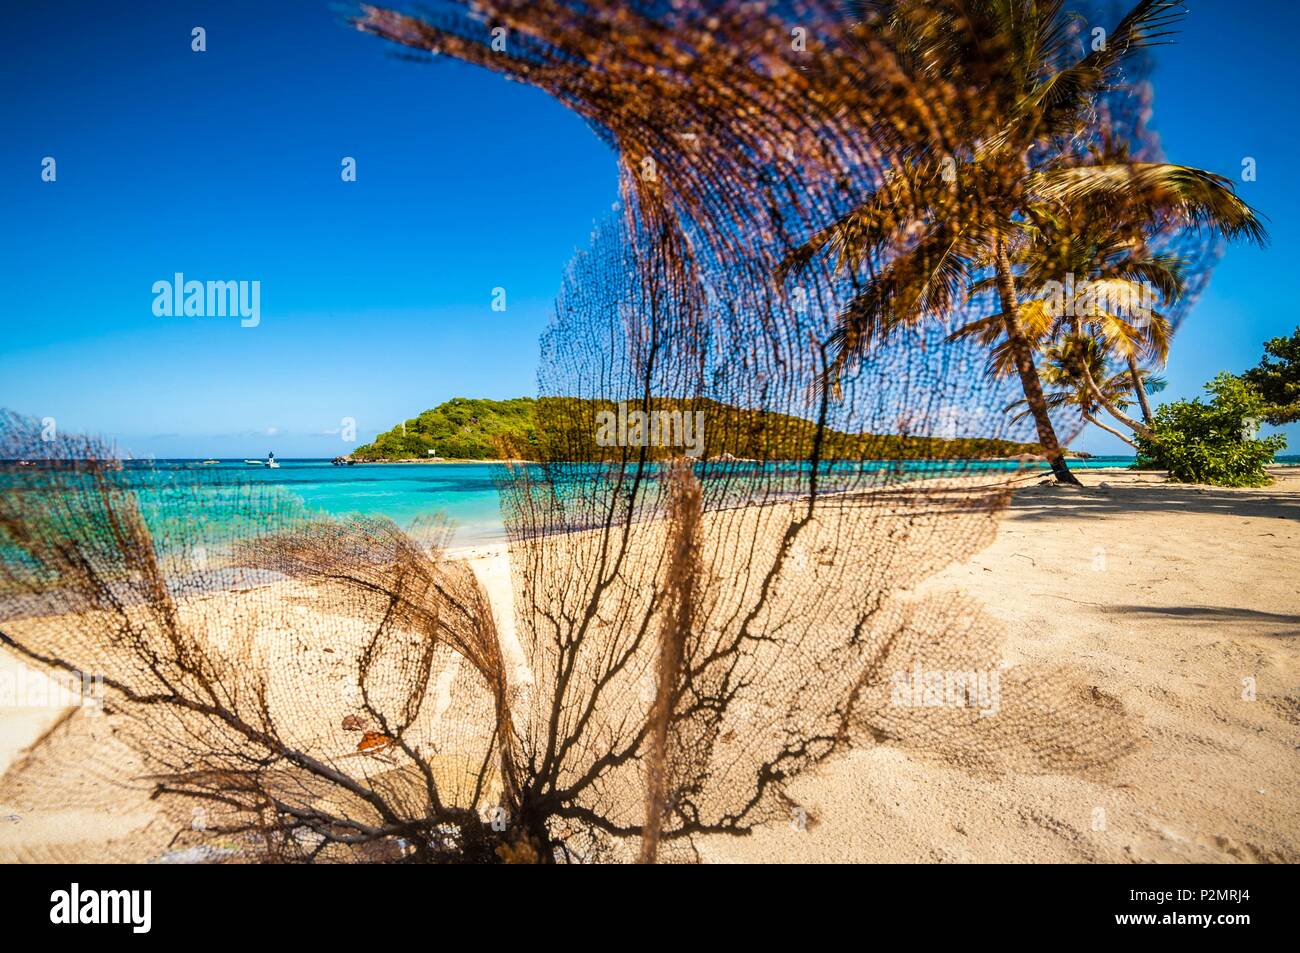 Caraïbes, Petites Antilles, Saint Vincent et les Grenadines, Petit Rameau, l'île de Tobago Cays, corail Gorgone échoués sur la plage en premier plan Banque D'Images